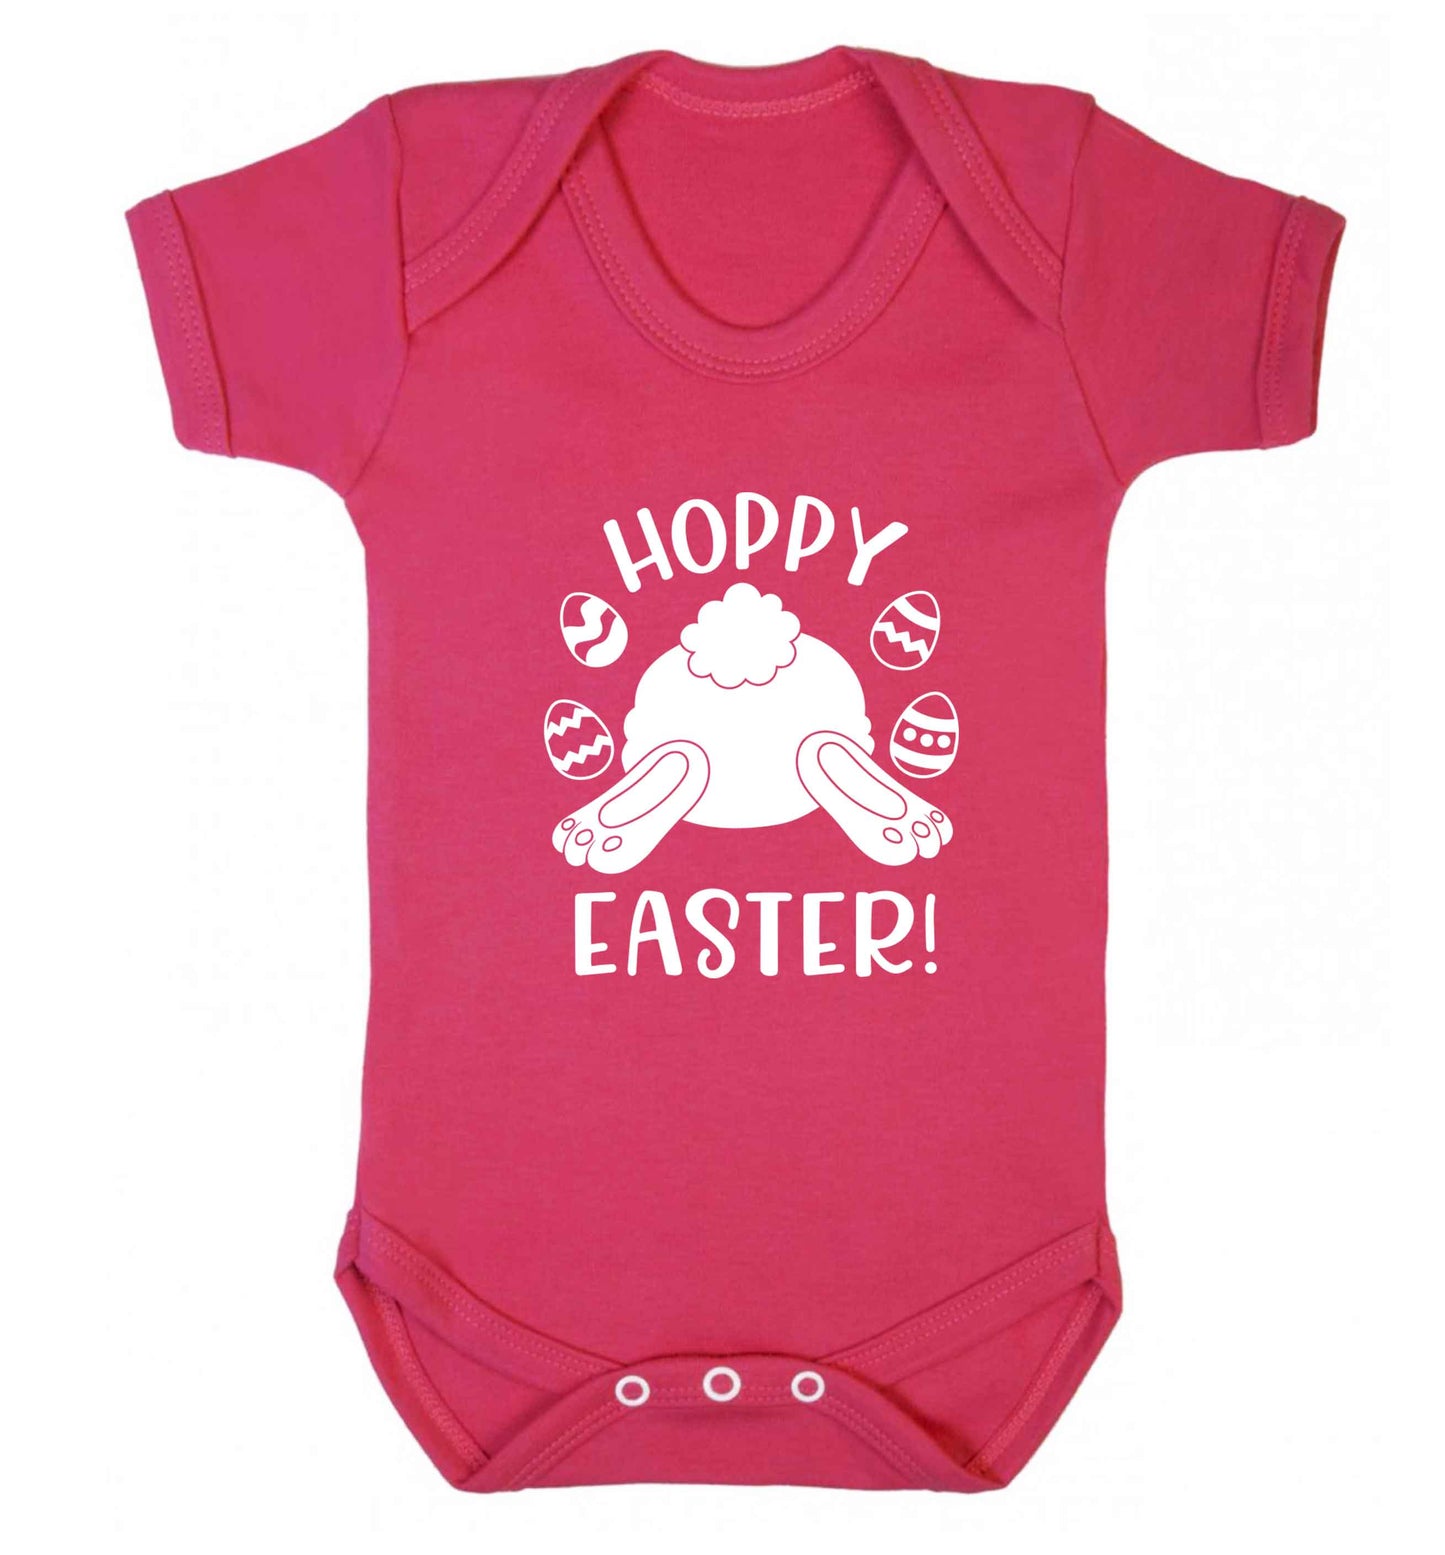 Hoppy Easter baby vest dark pink 18-24 months